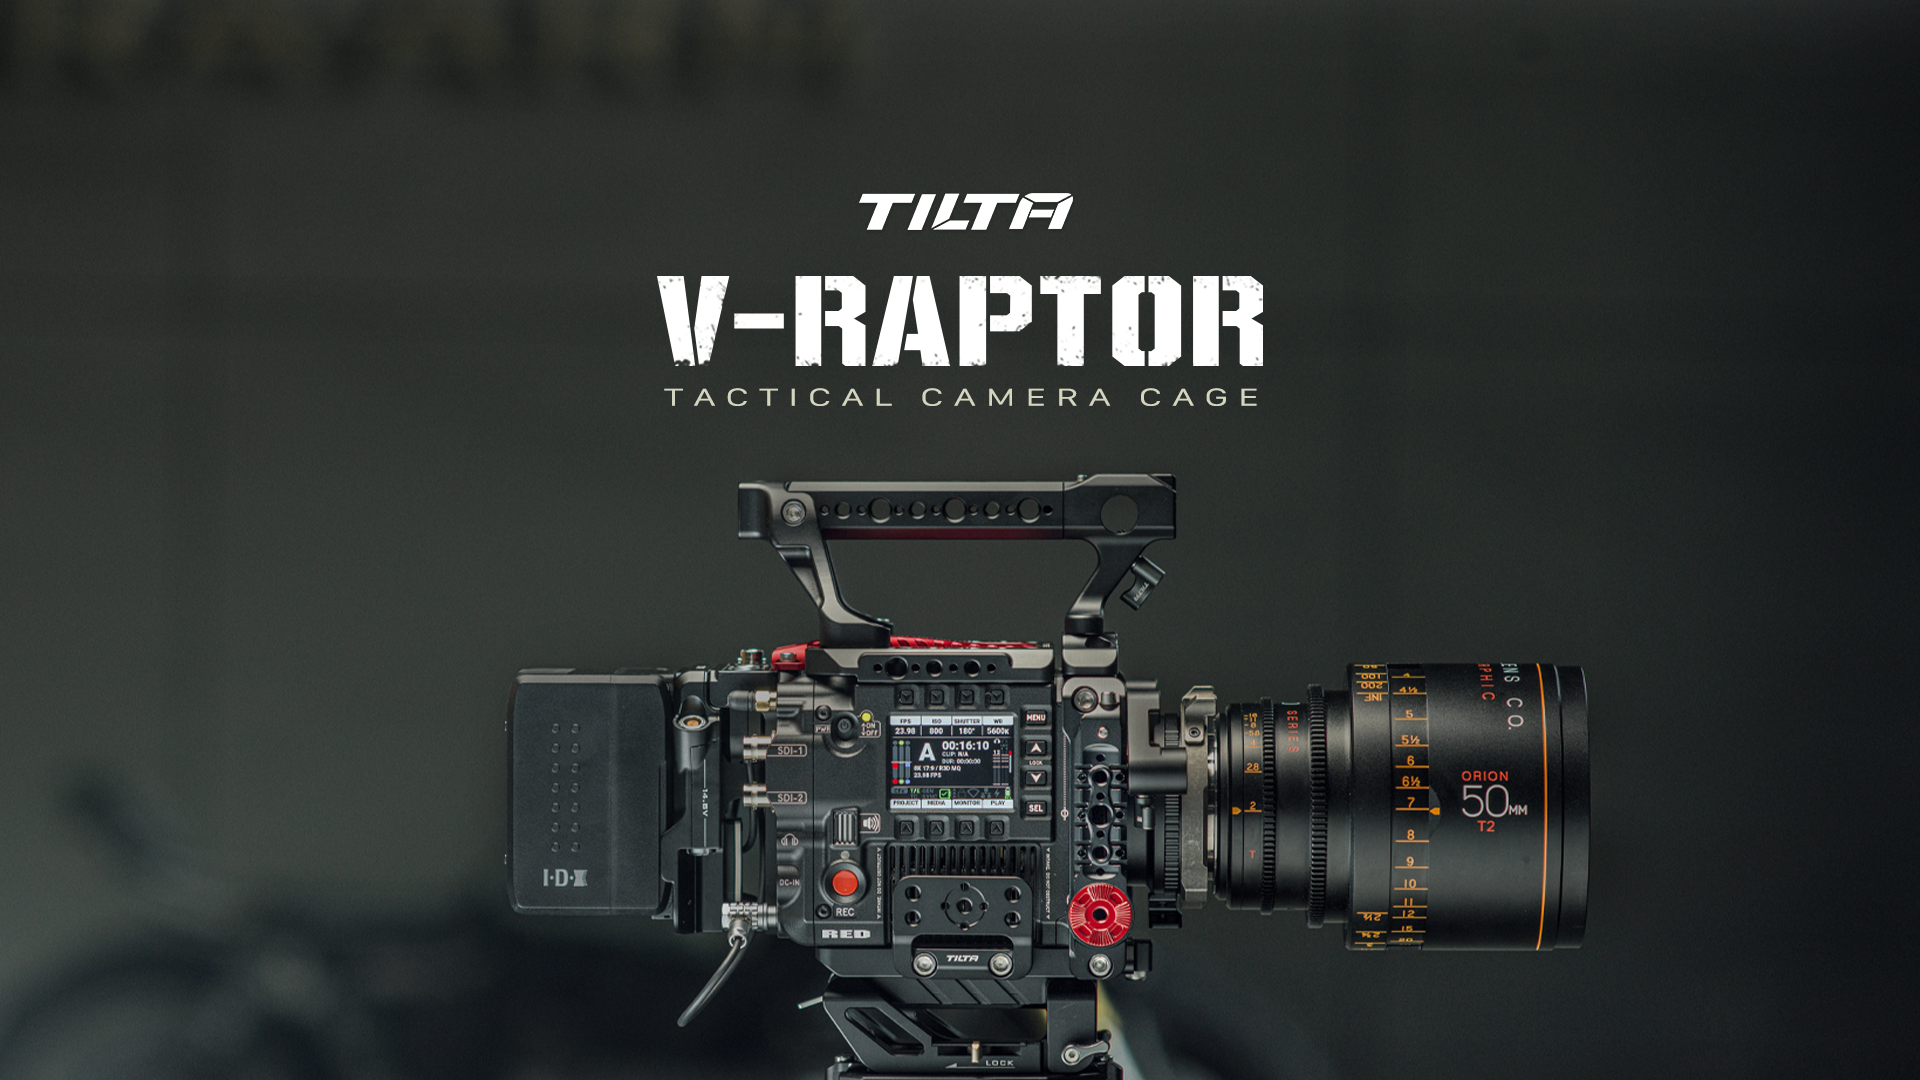 Full Camera Cage for RED V-RAPTOR/V-RAPTOR [X]